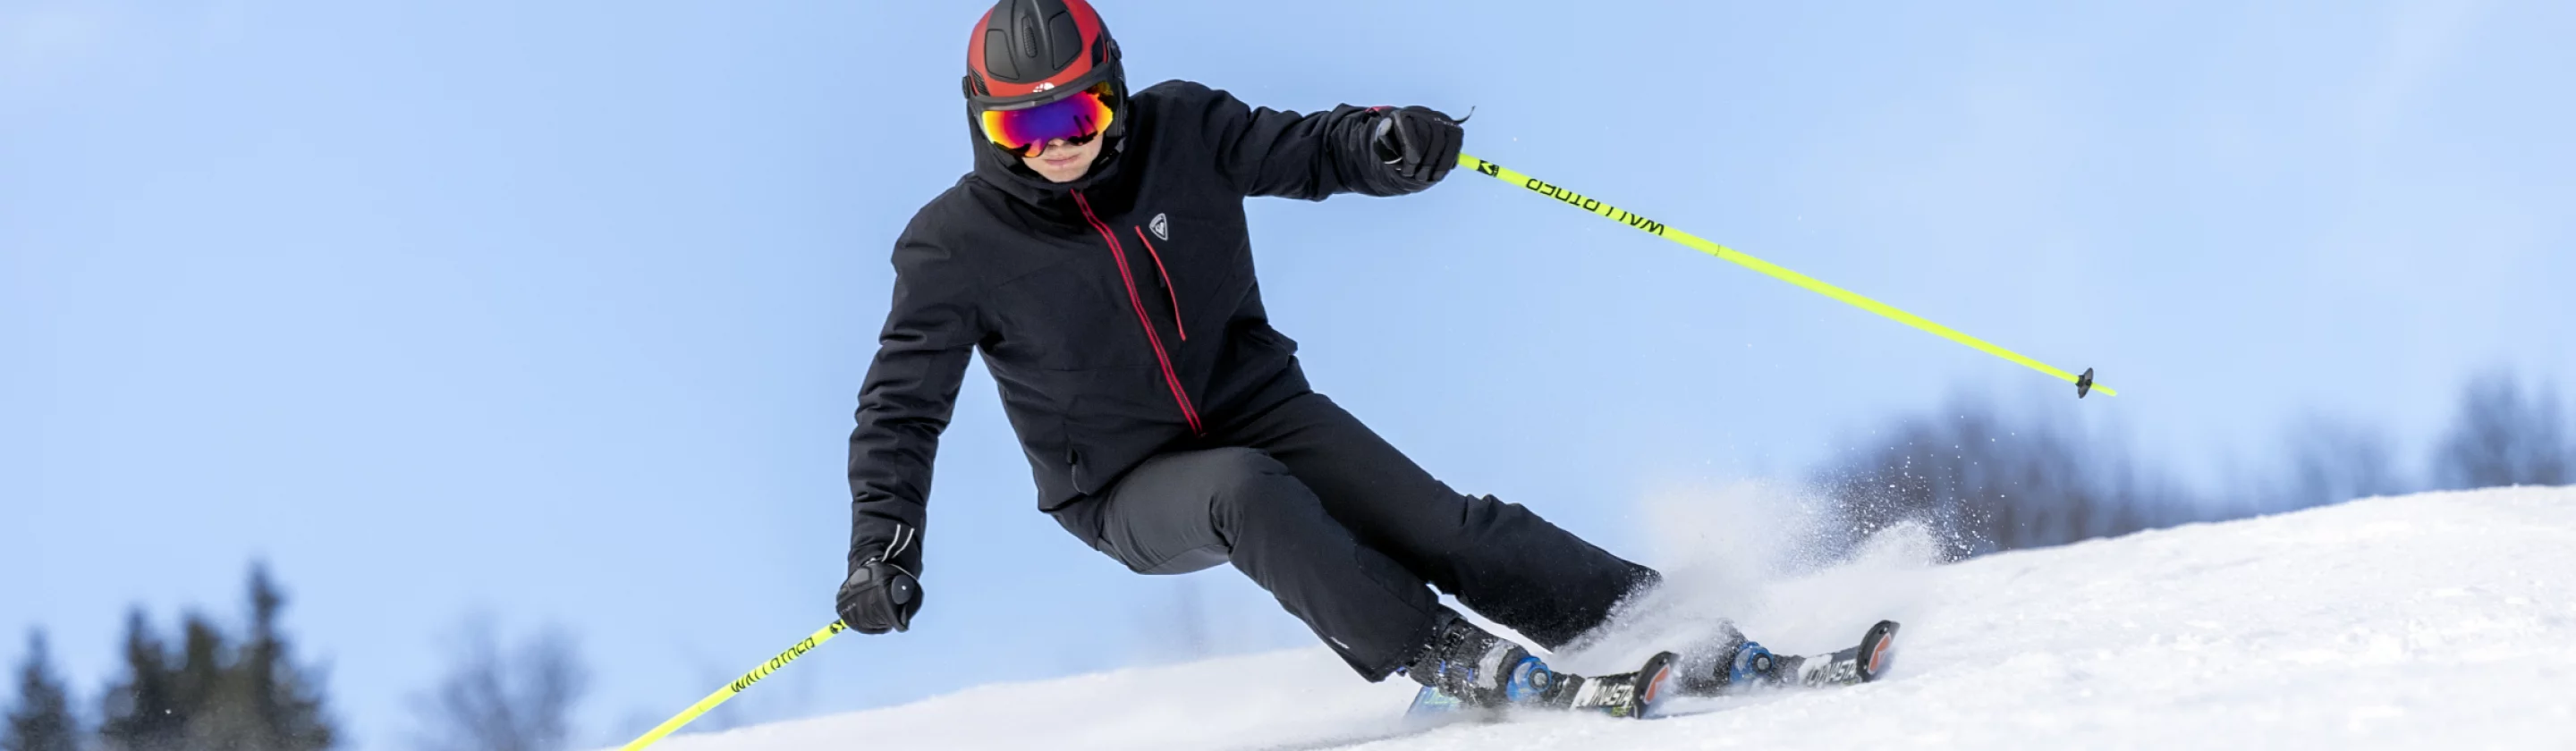 Protection skis, housse à skis et snowboard - Technique Extrême